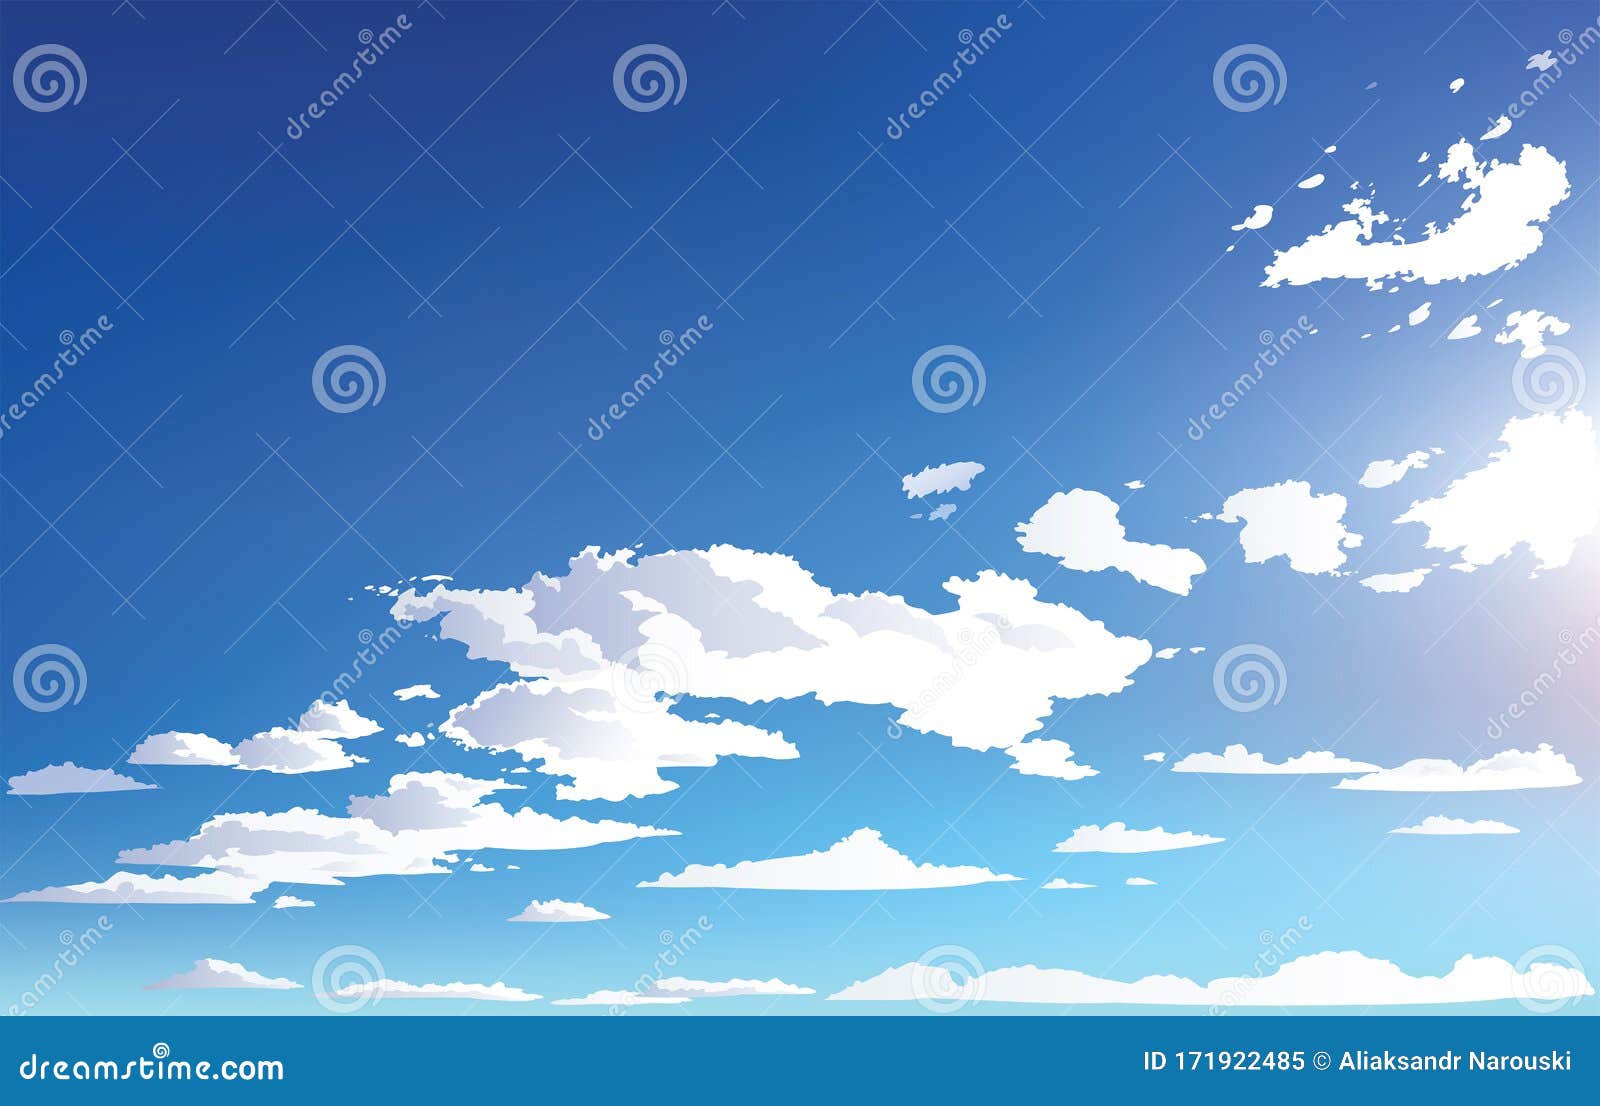 Hãy nhìn đến địa cảnh nền trời mây đầy mê hoặc này! Lớp mây trắng xóa tan khối tình đã cũ, tạo nên bầu trời xanh thật mê hoặc. Hãy đắm chìm trong cảnh sắc tự nhiên này và cảm nhận sự bình yên tràn đầy.